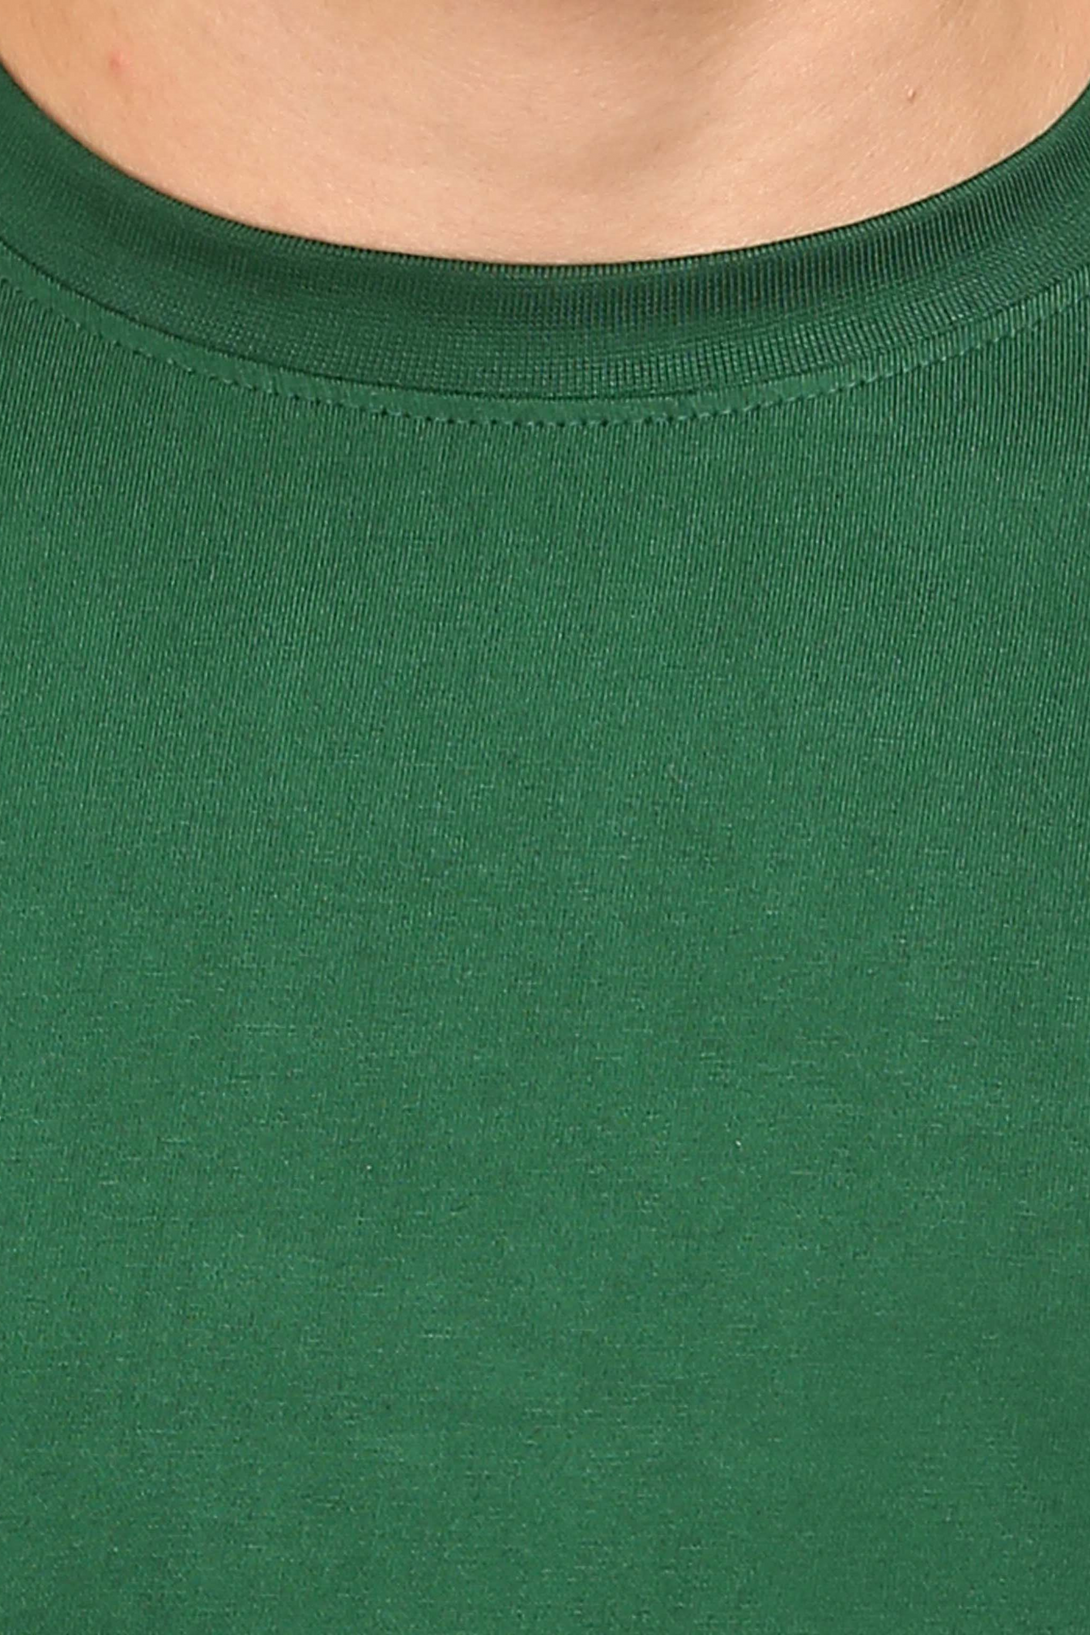 Bottle Green T-Shirt For Men - WowWaves - 2